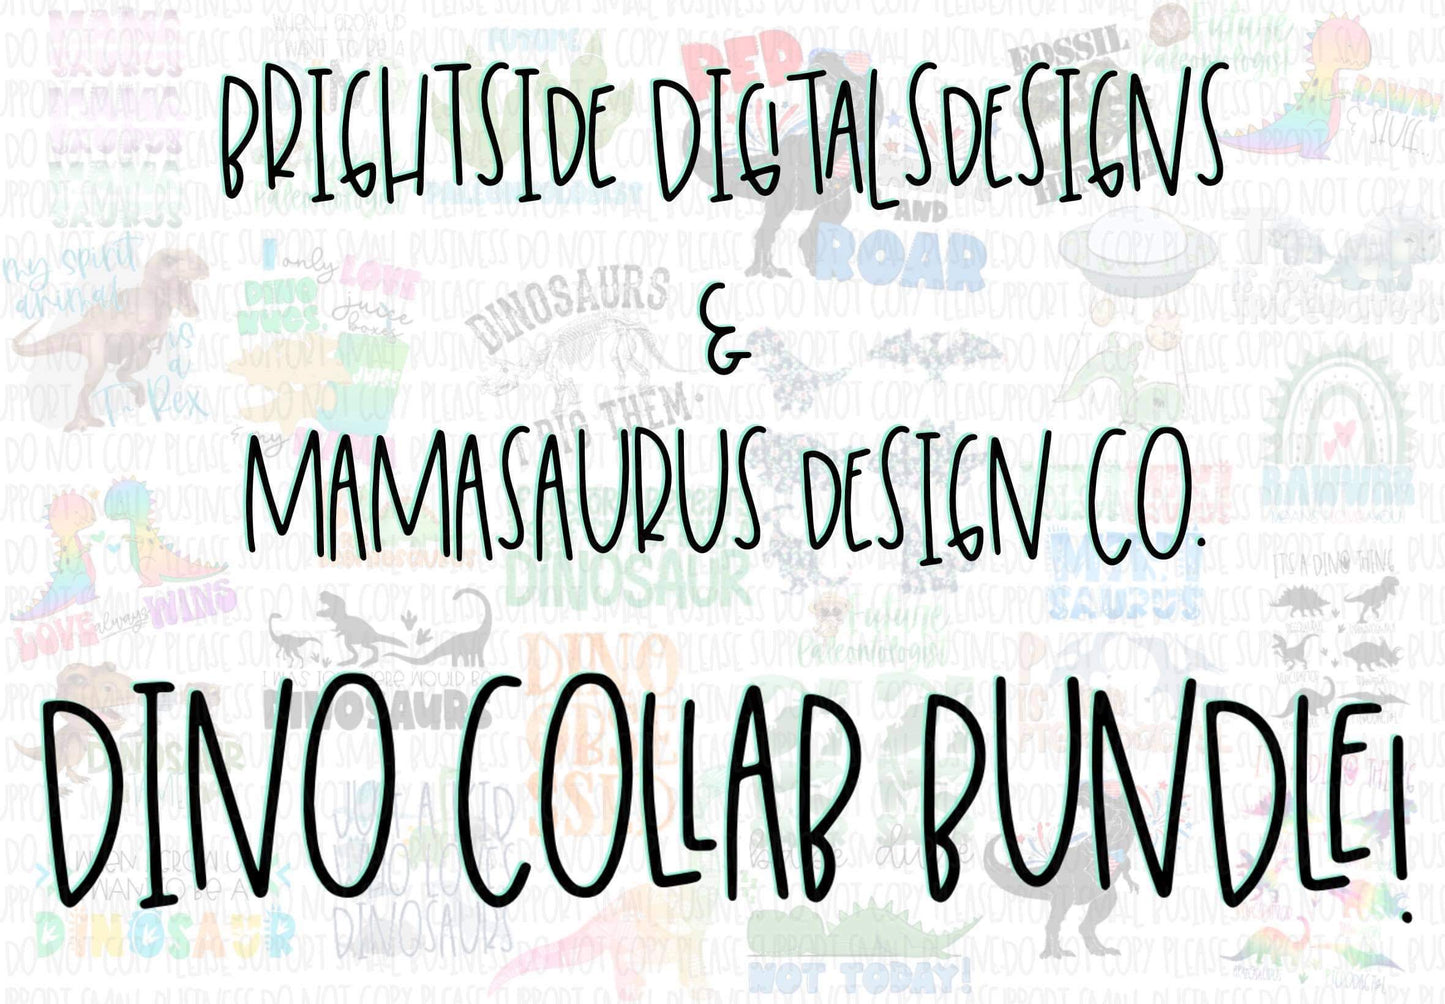 Dino Collab Bundle 39 designs!